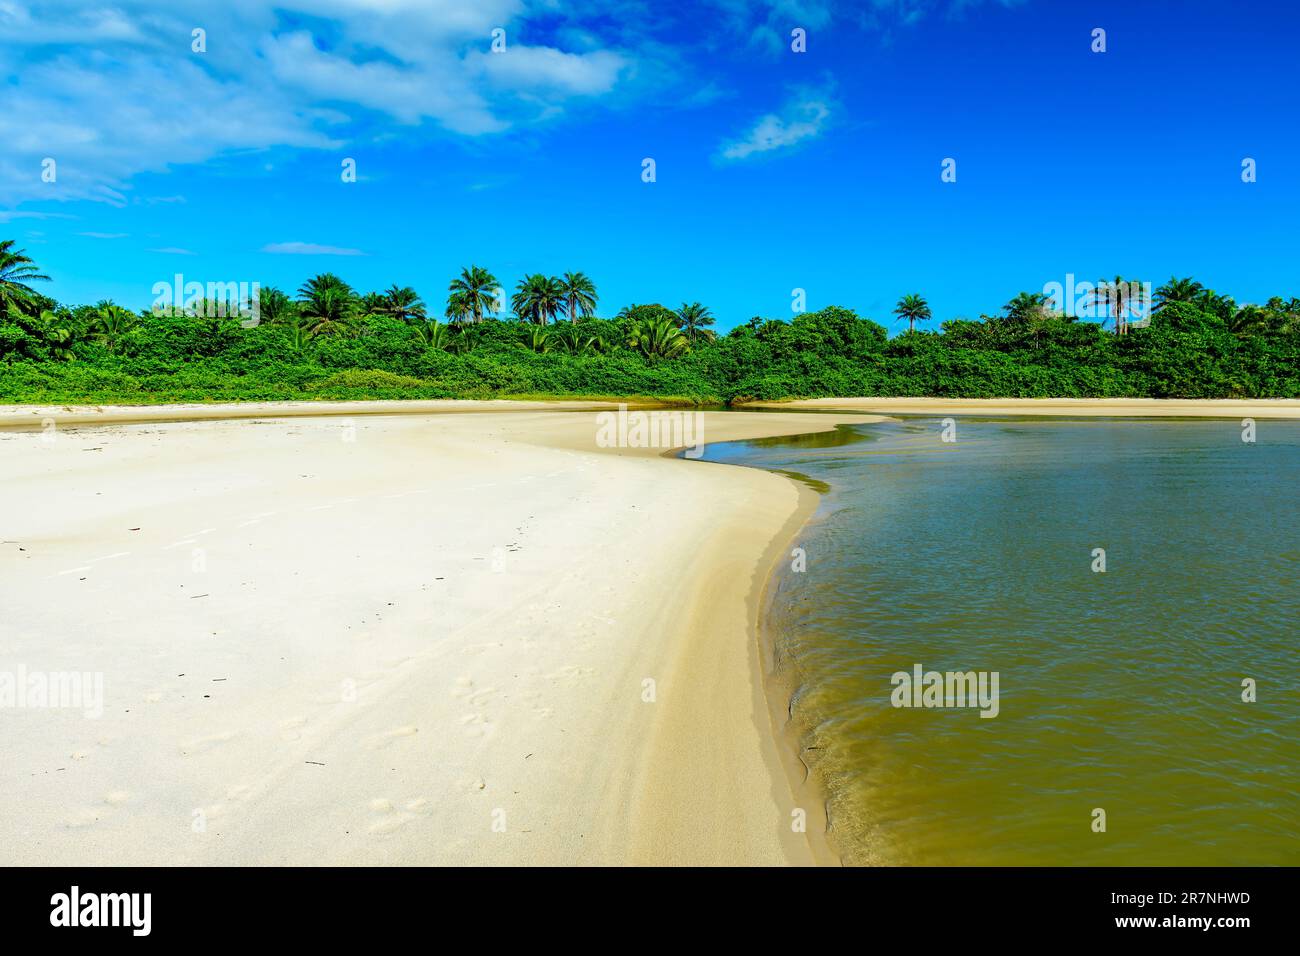 Der Fluss kommt aus der Mitte der einheimischen Vegetation und geht über den Sand am Sargi Beach in Serra Grande, Bahia in Richtung Meer Stockfoto